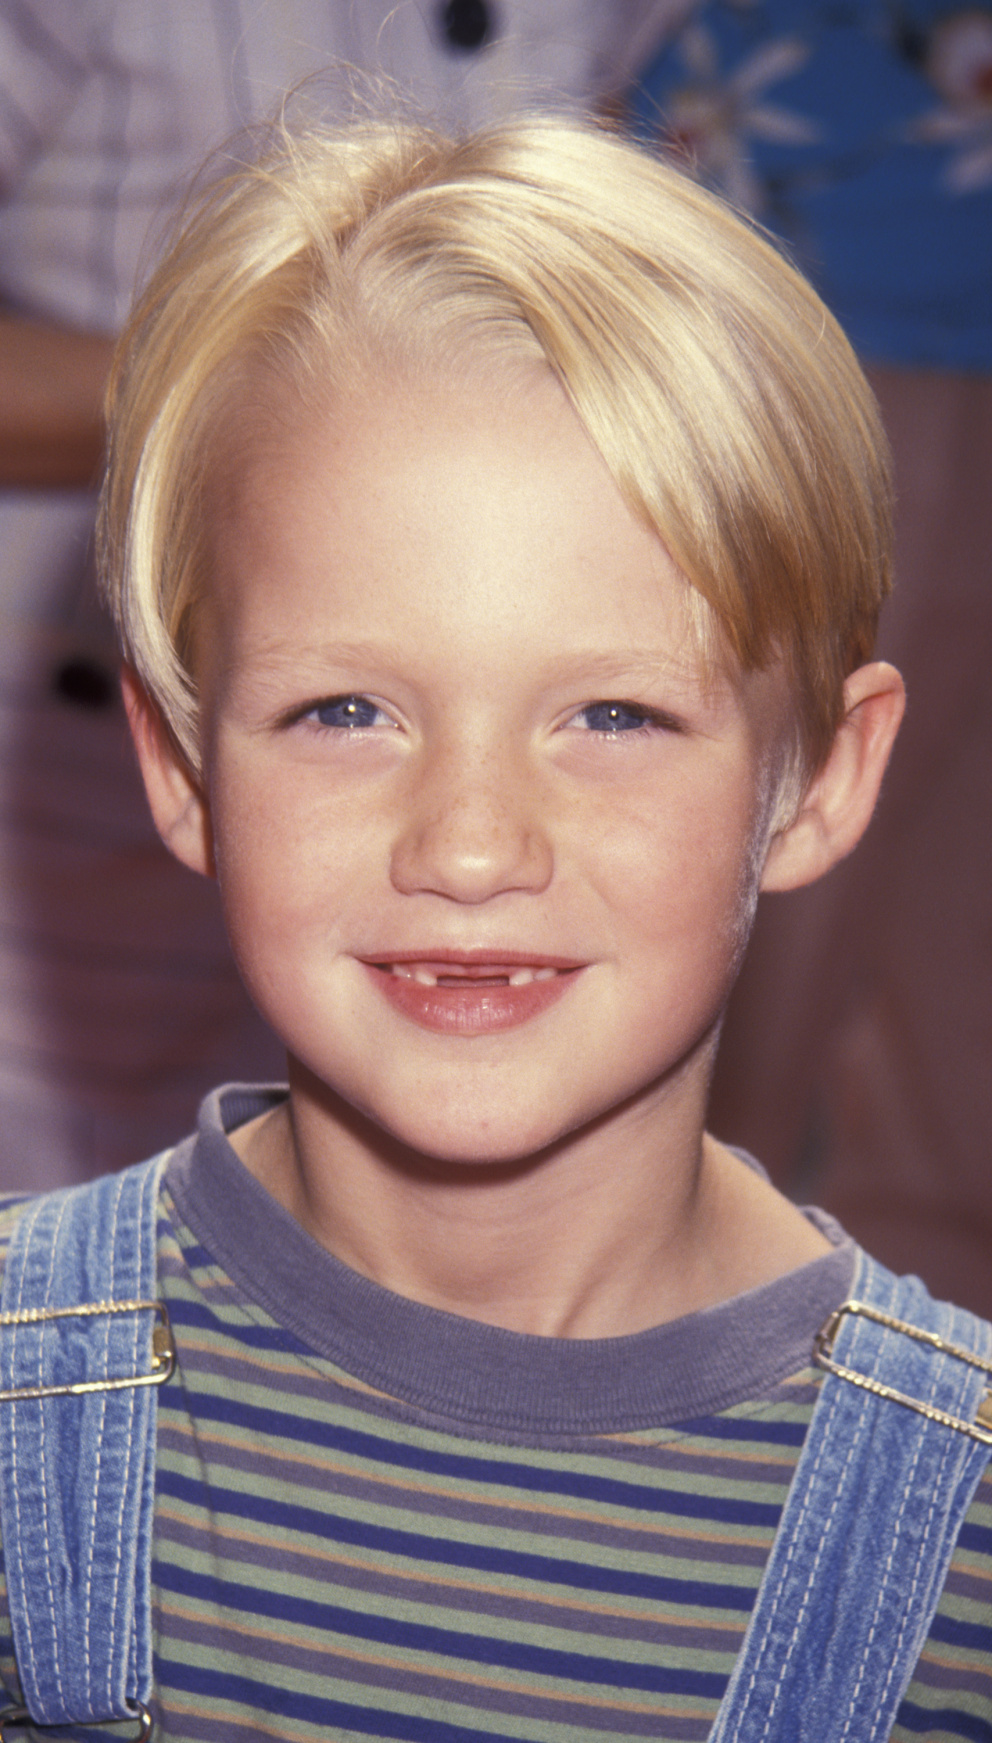 Mason Gamble jako dítě

Vedle Kevina tu byl v 90. letech ještě jeden uličník – Mason Gamble v roli Dennise – postarcha okolí. V té době mu bylo sedm let.
